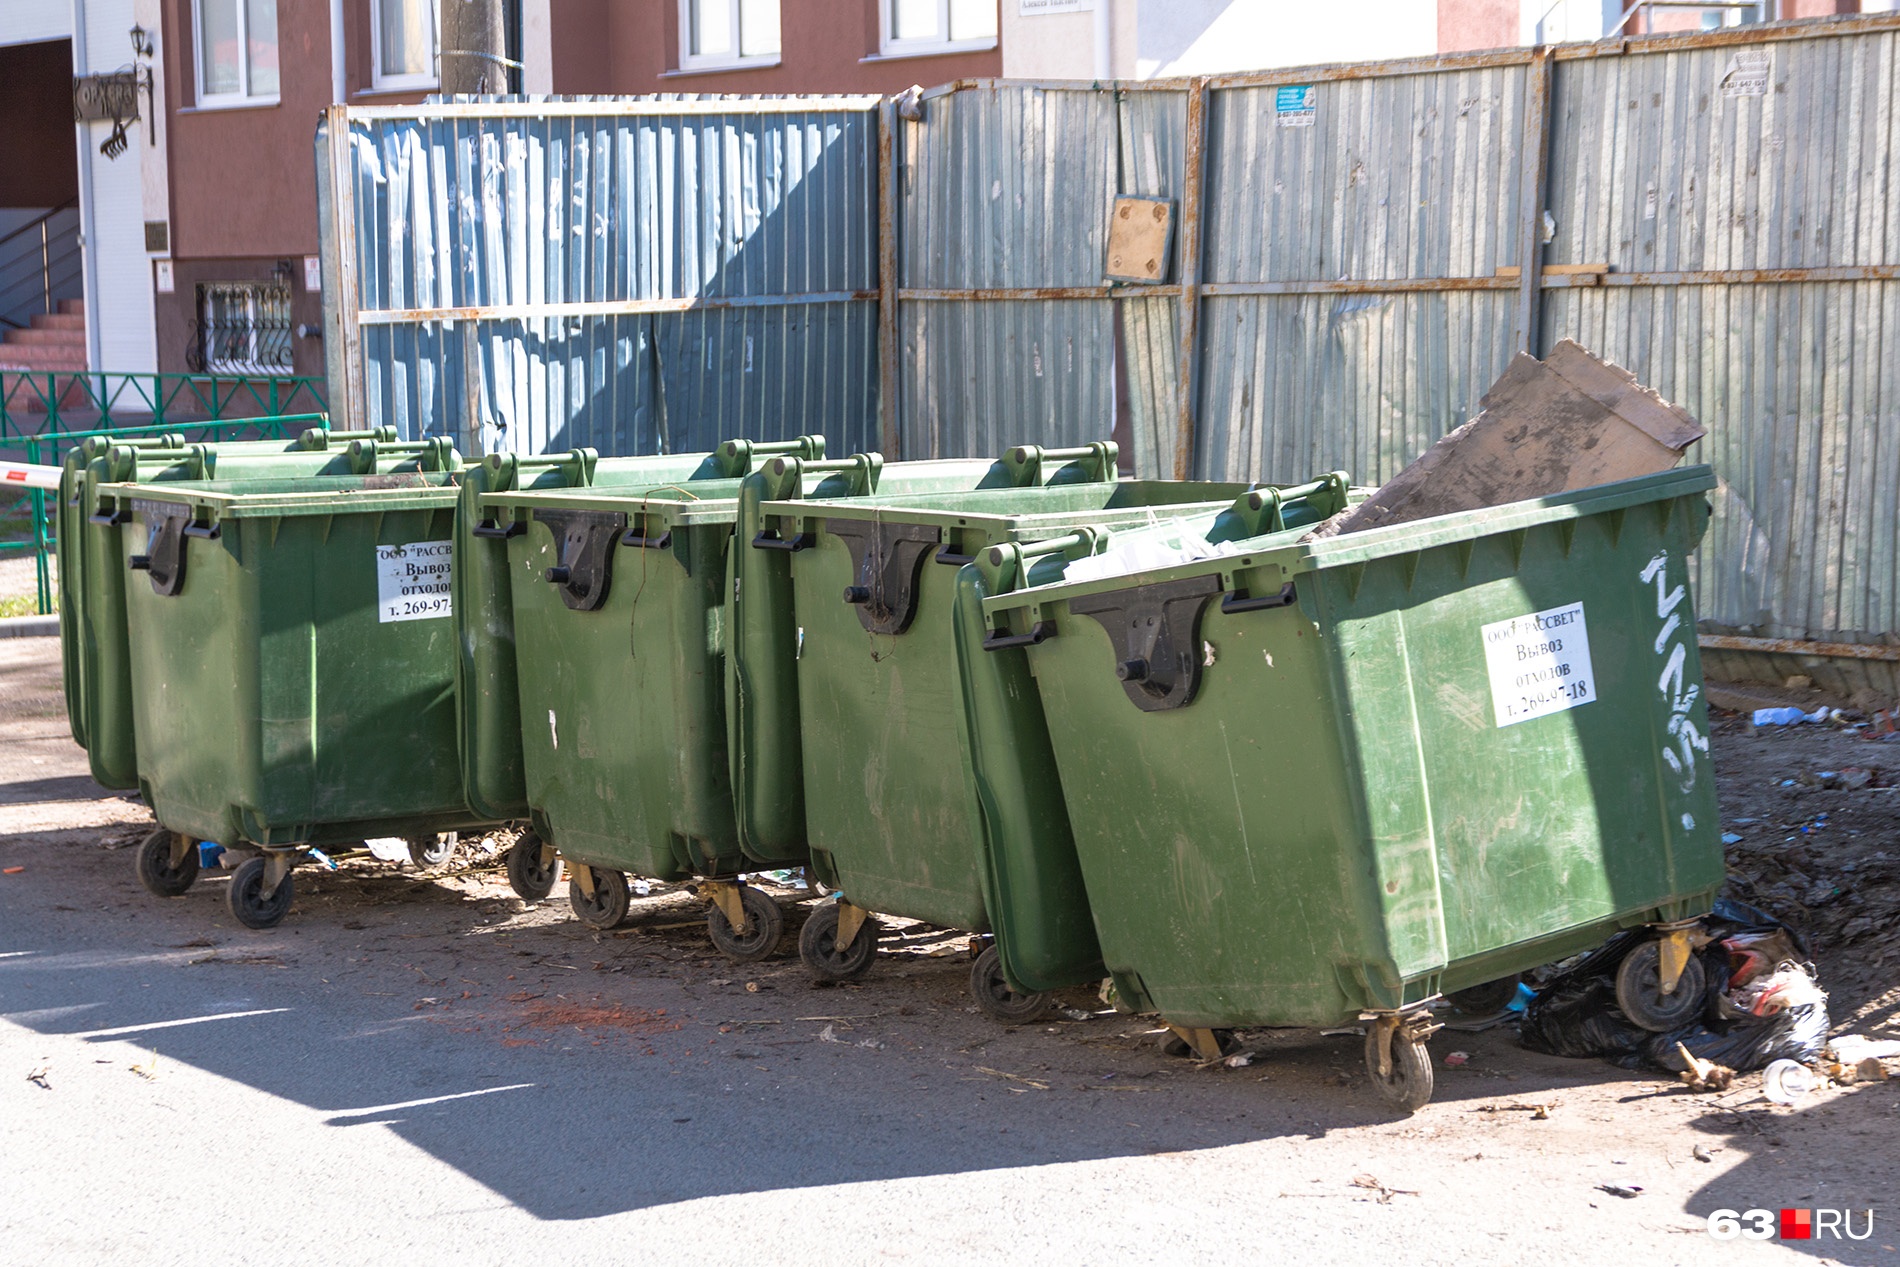 УФАС: «Регоператор завысил тариф на мусор для медучреждений в Самарской области в 12 раз»